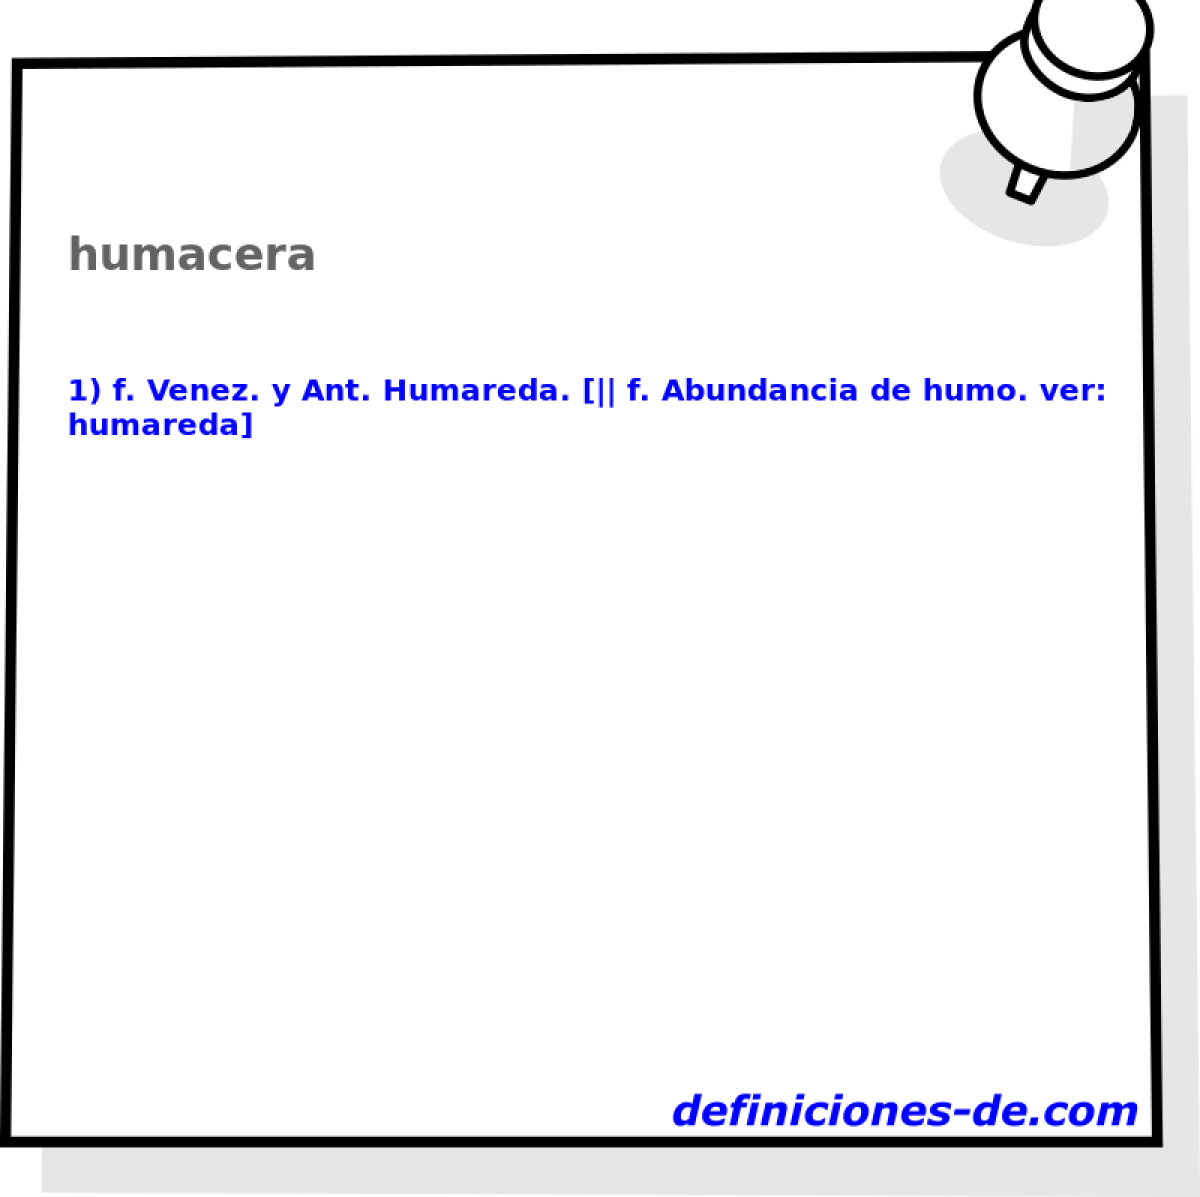 humacera 